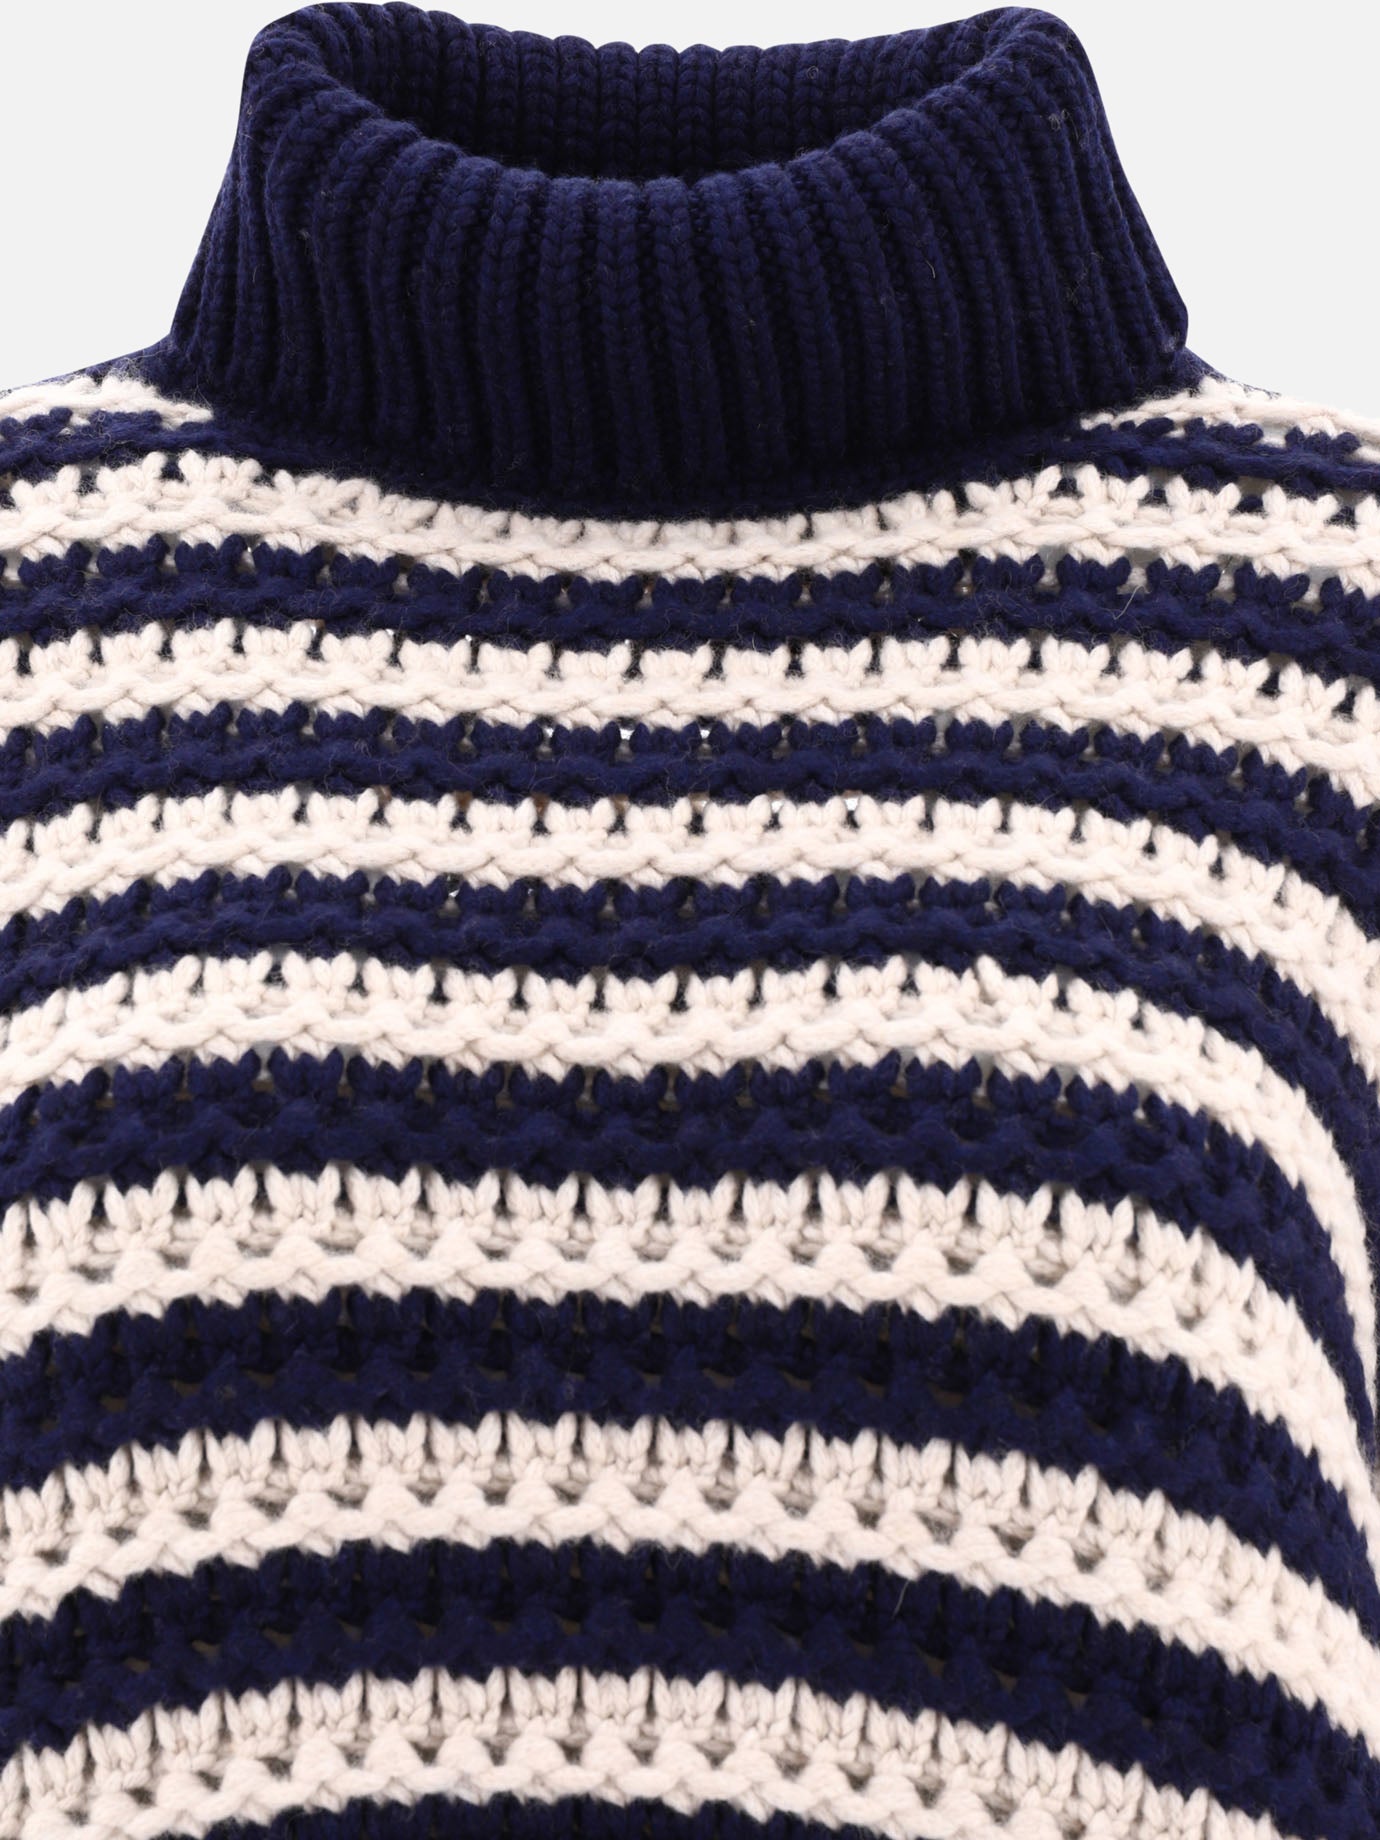 Openwork turtleneck sweater